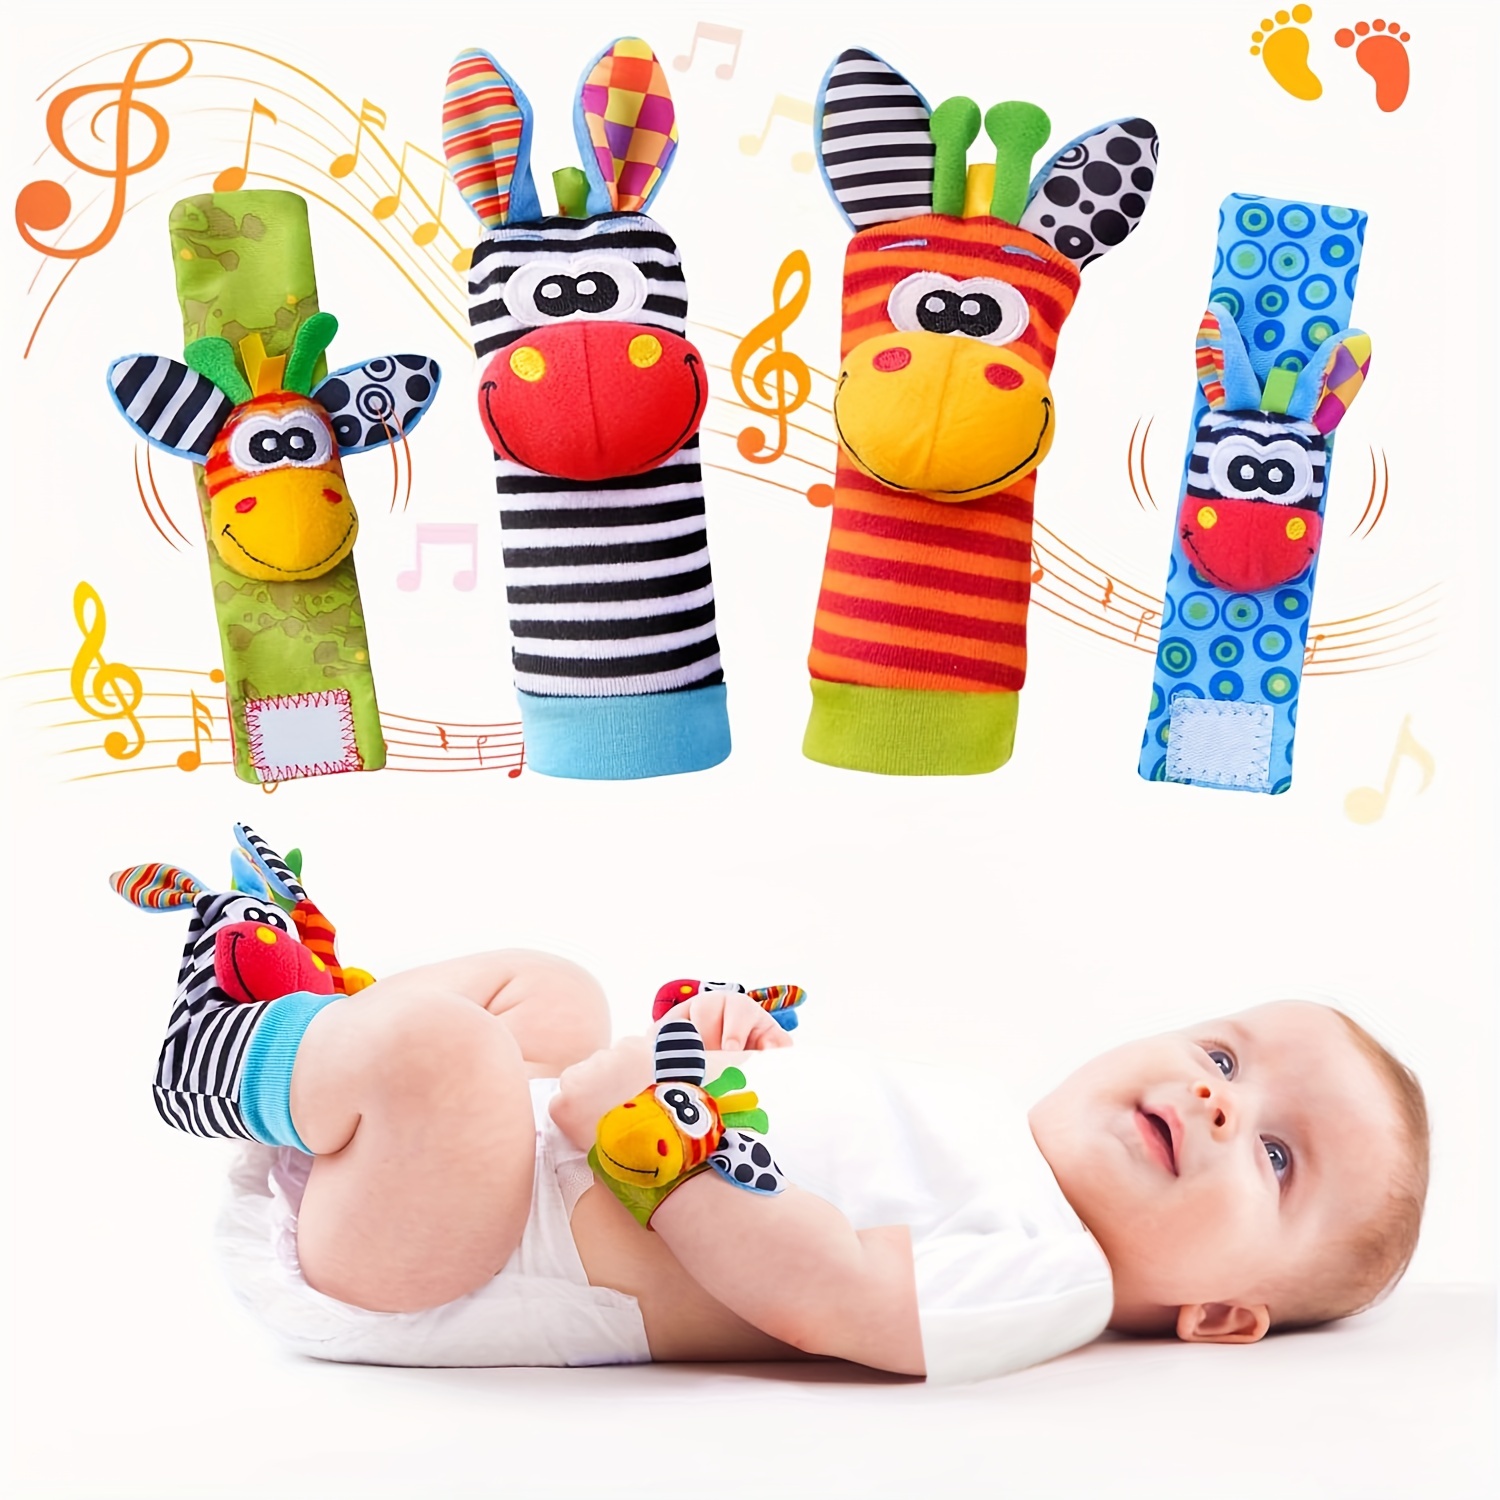 Bébé jouet infantile bébé enfants chaussettes hochet jouets poignet hochet  et pied chaussettes suspendus hochets en peluche jouet 0 ~ 24 mois pour bébé  - 2